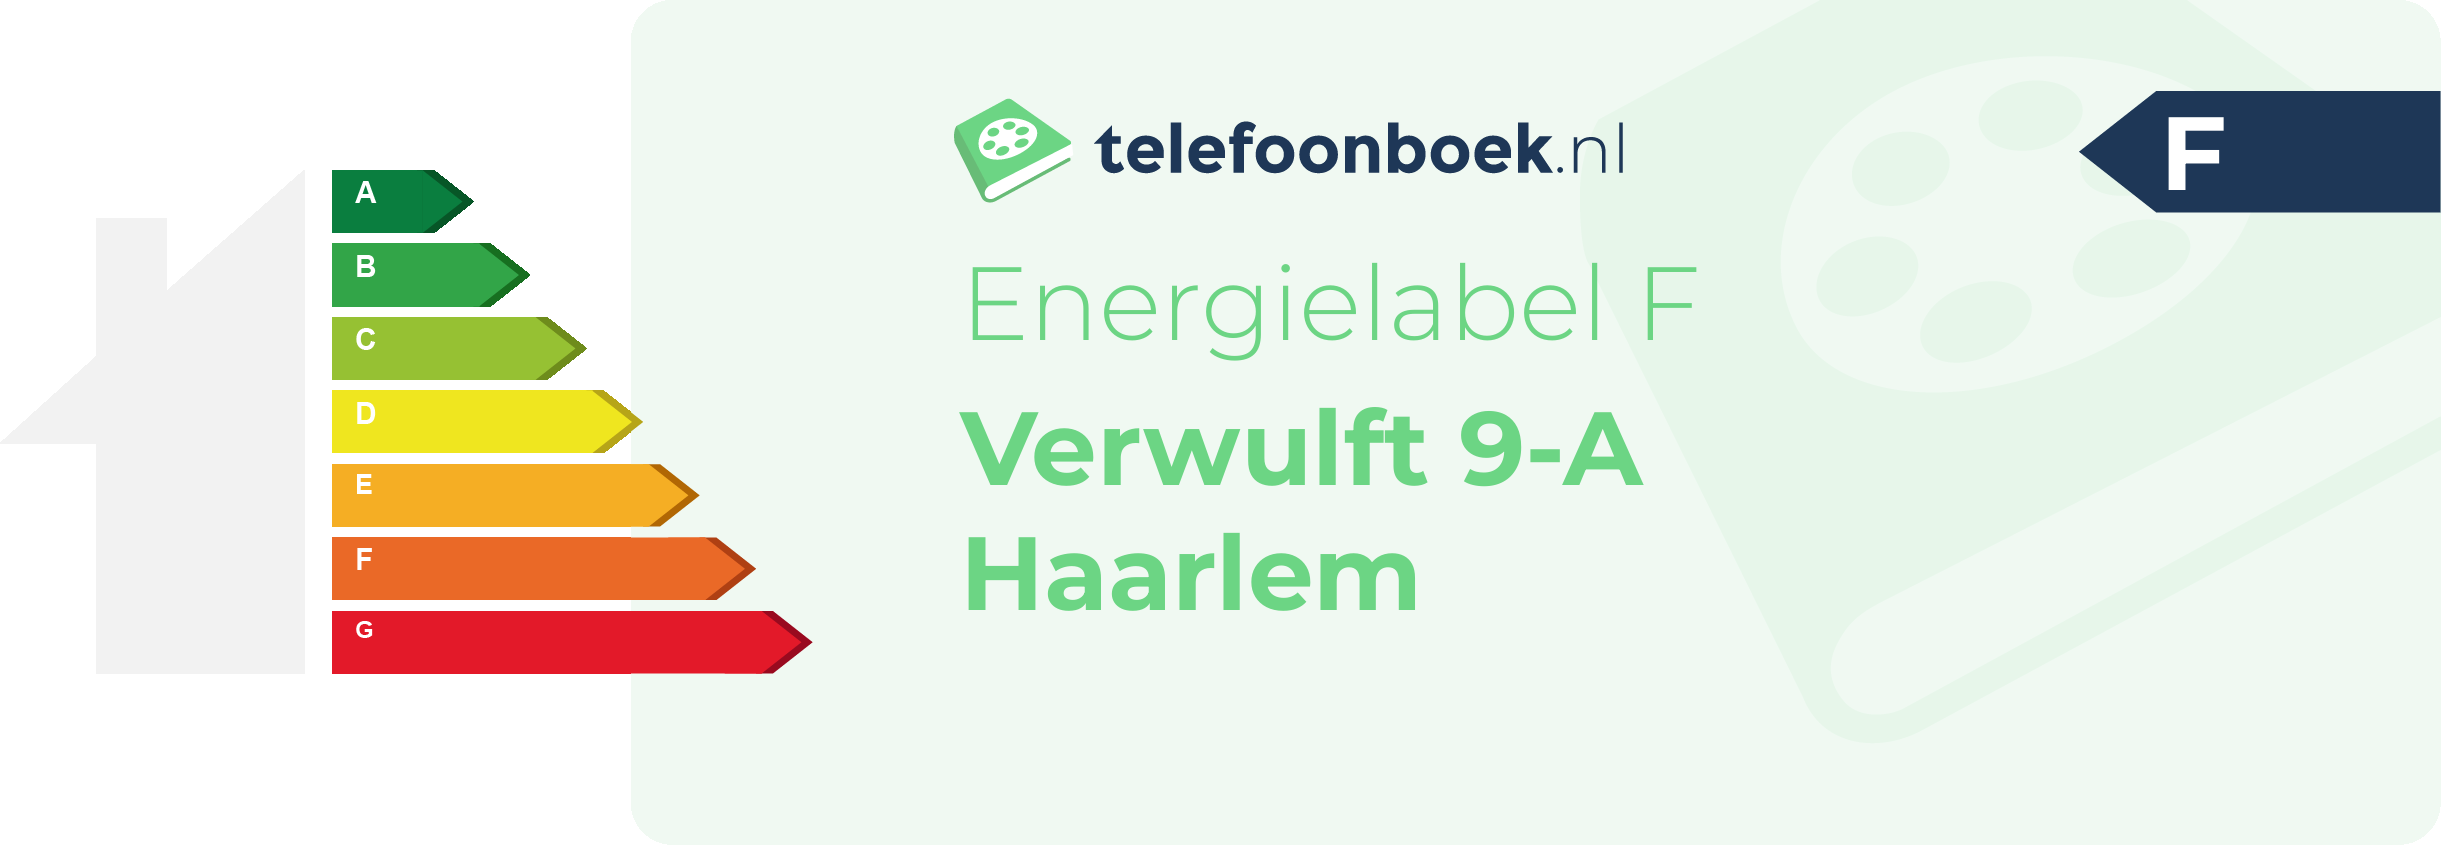 Energielabel Verwulft 9-A Haarlem